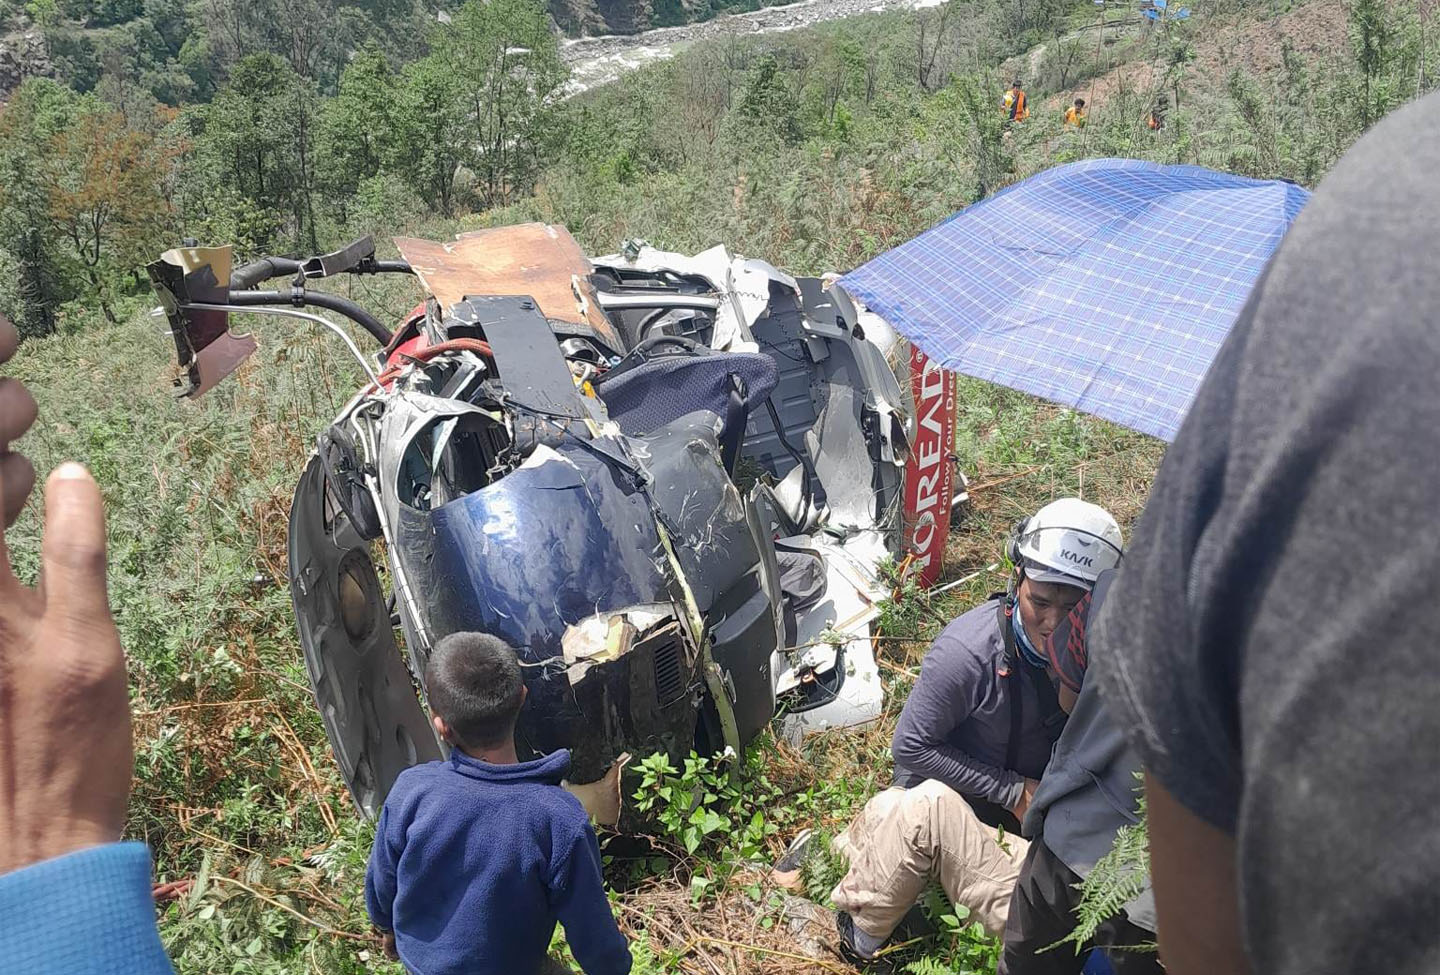 Simrik Air helicopter crash update: Rescue efforts underway, three severely injured